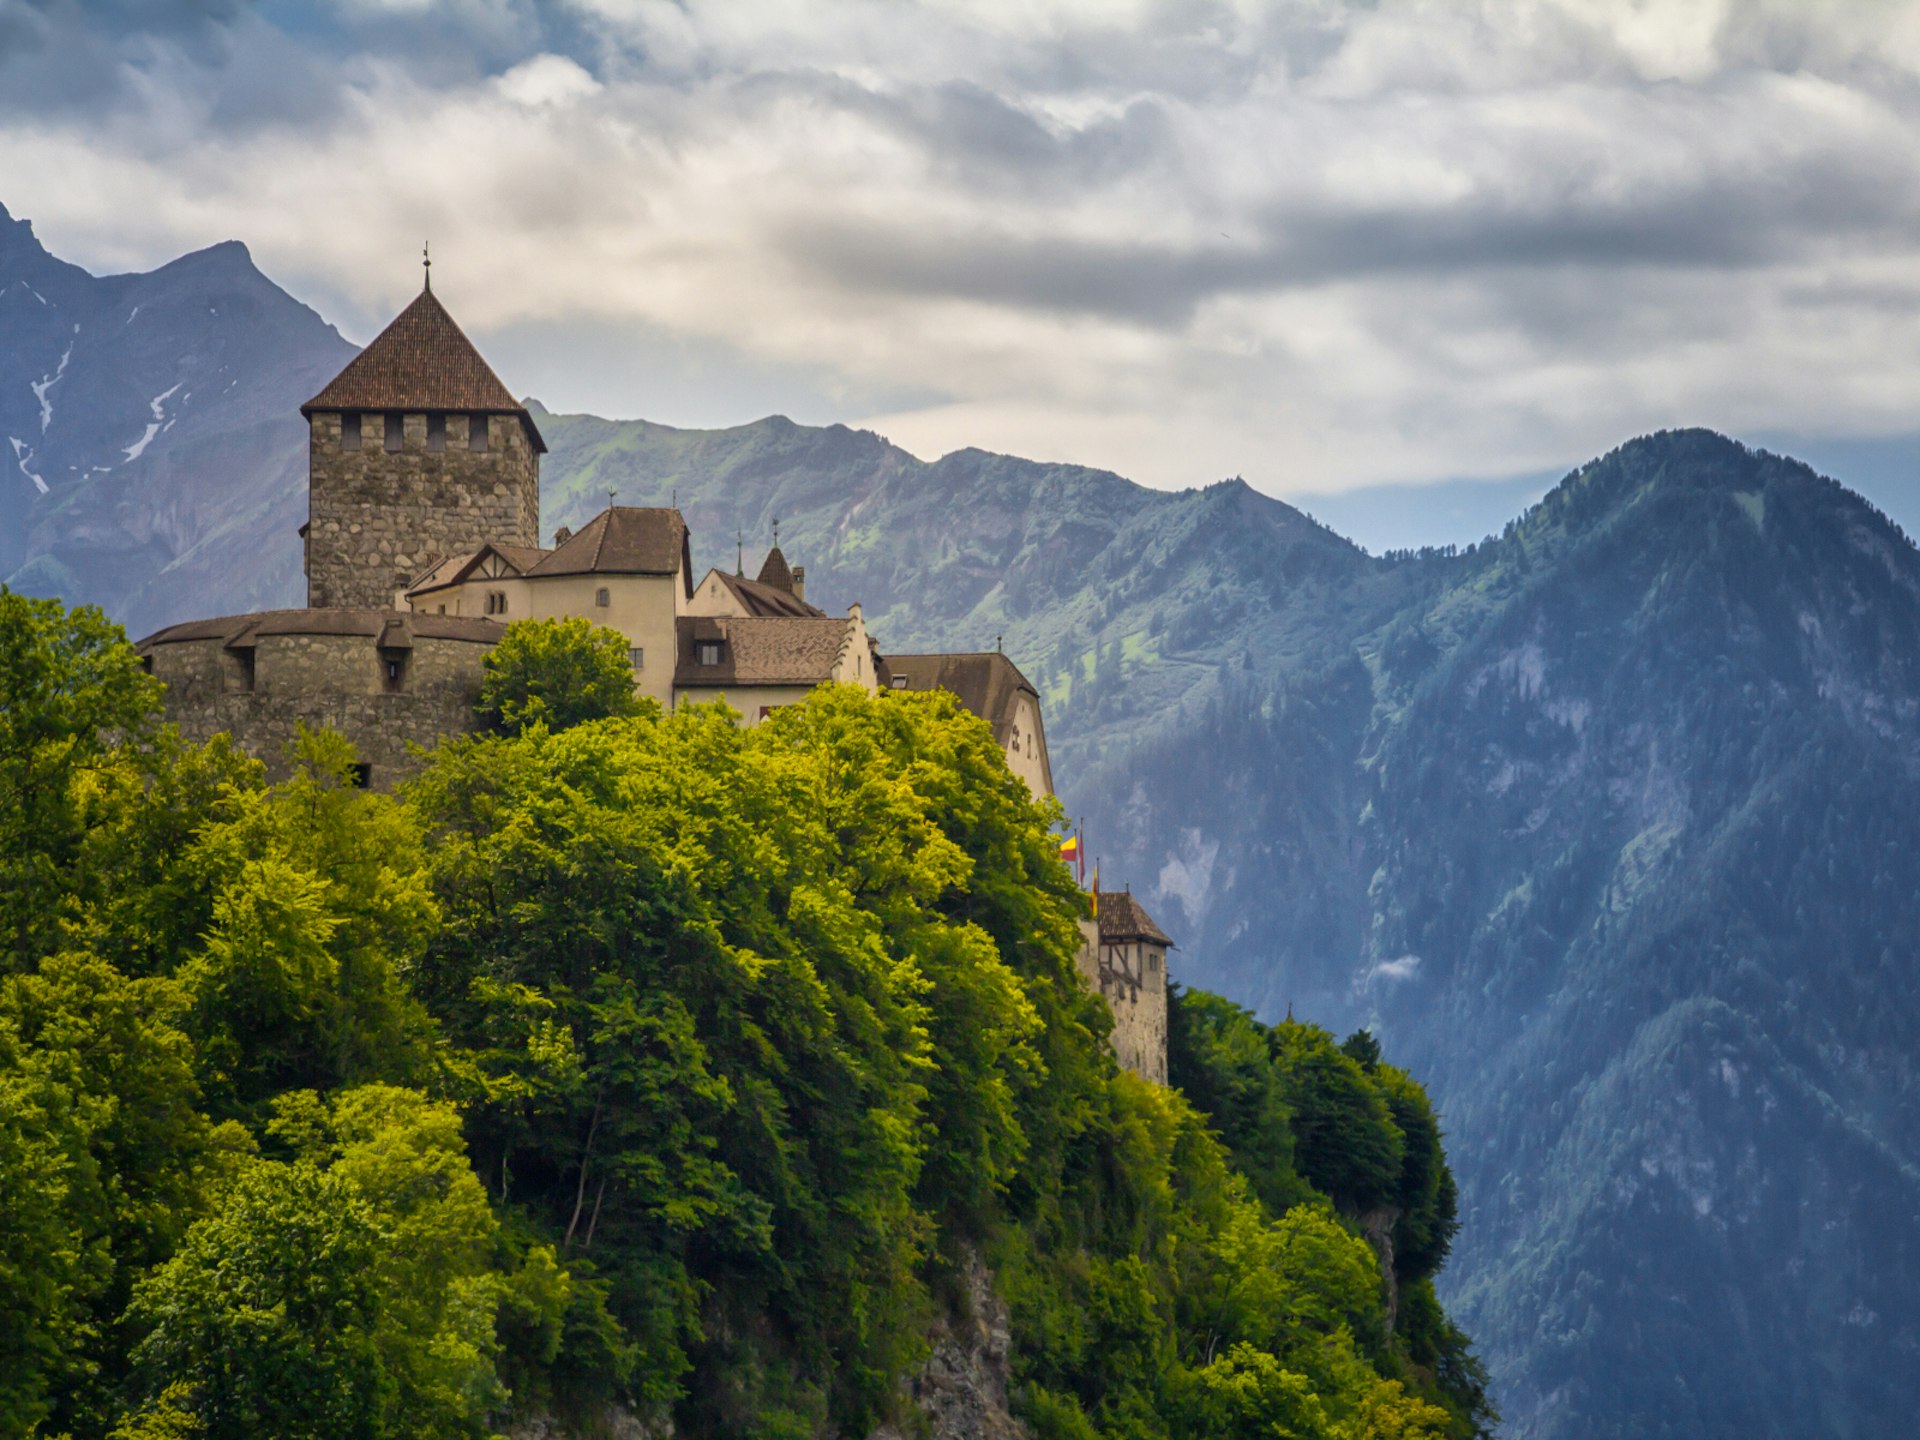 Liechtenstein's petite capital Vadiz is overlooked by the 12th-century Schloss Vaduz